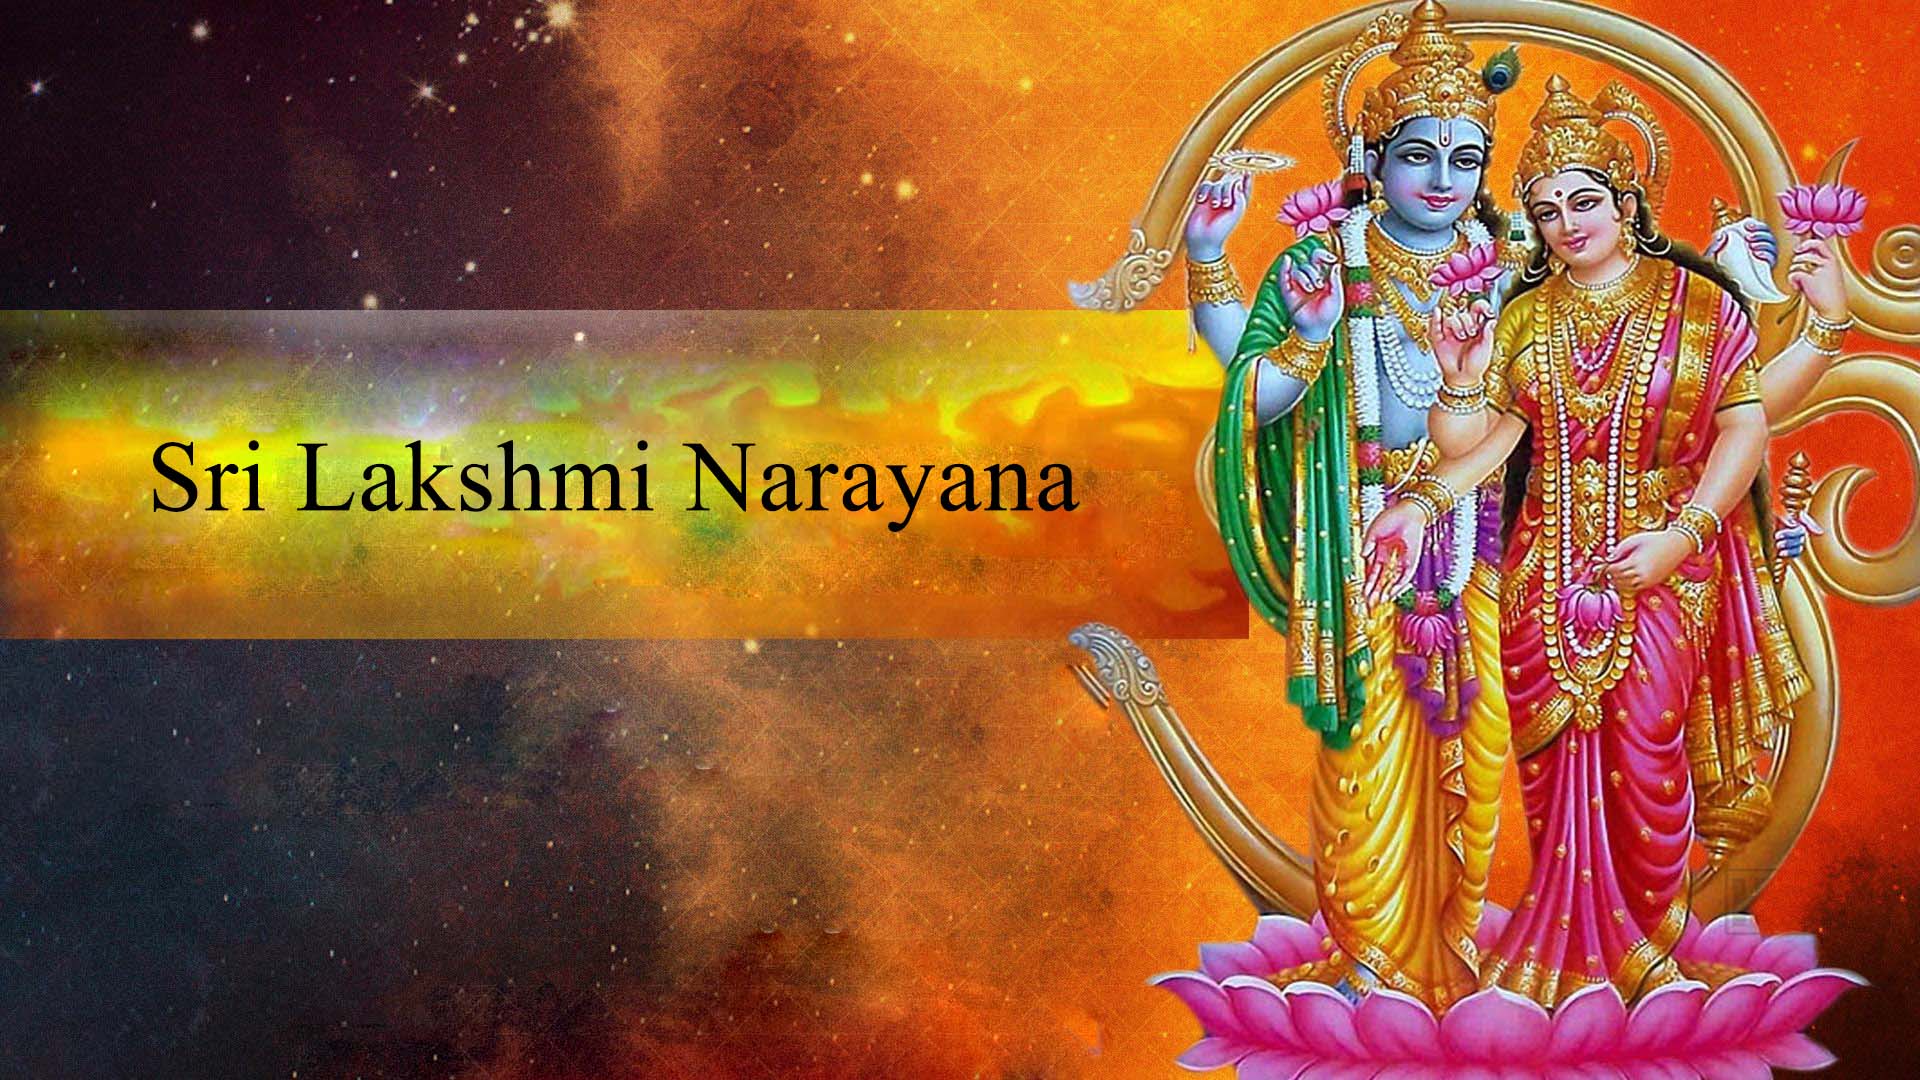 Sri Lakshmi Narayana Images